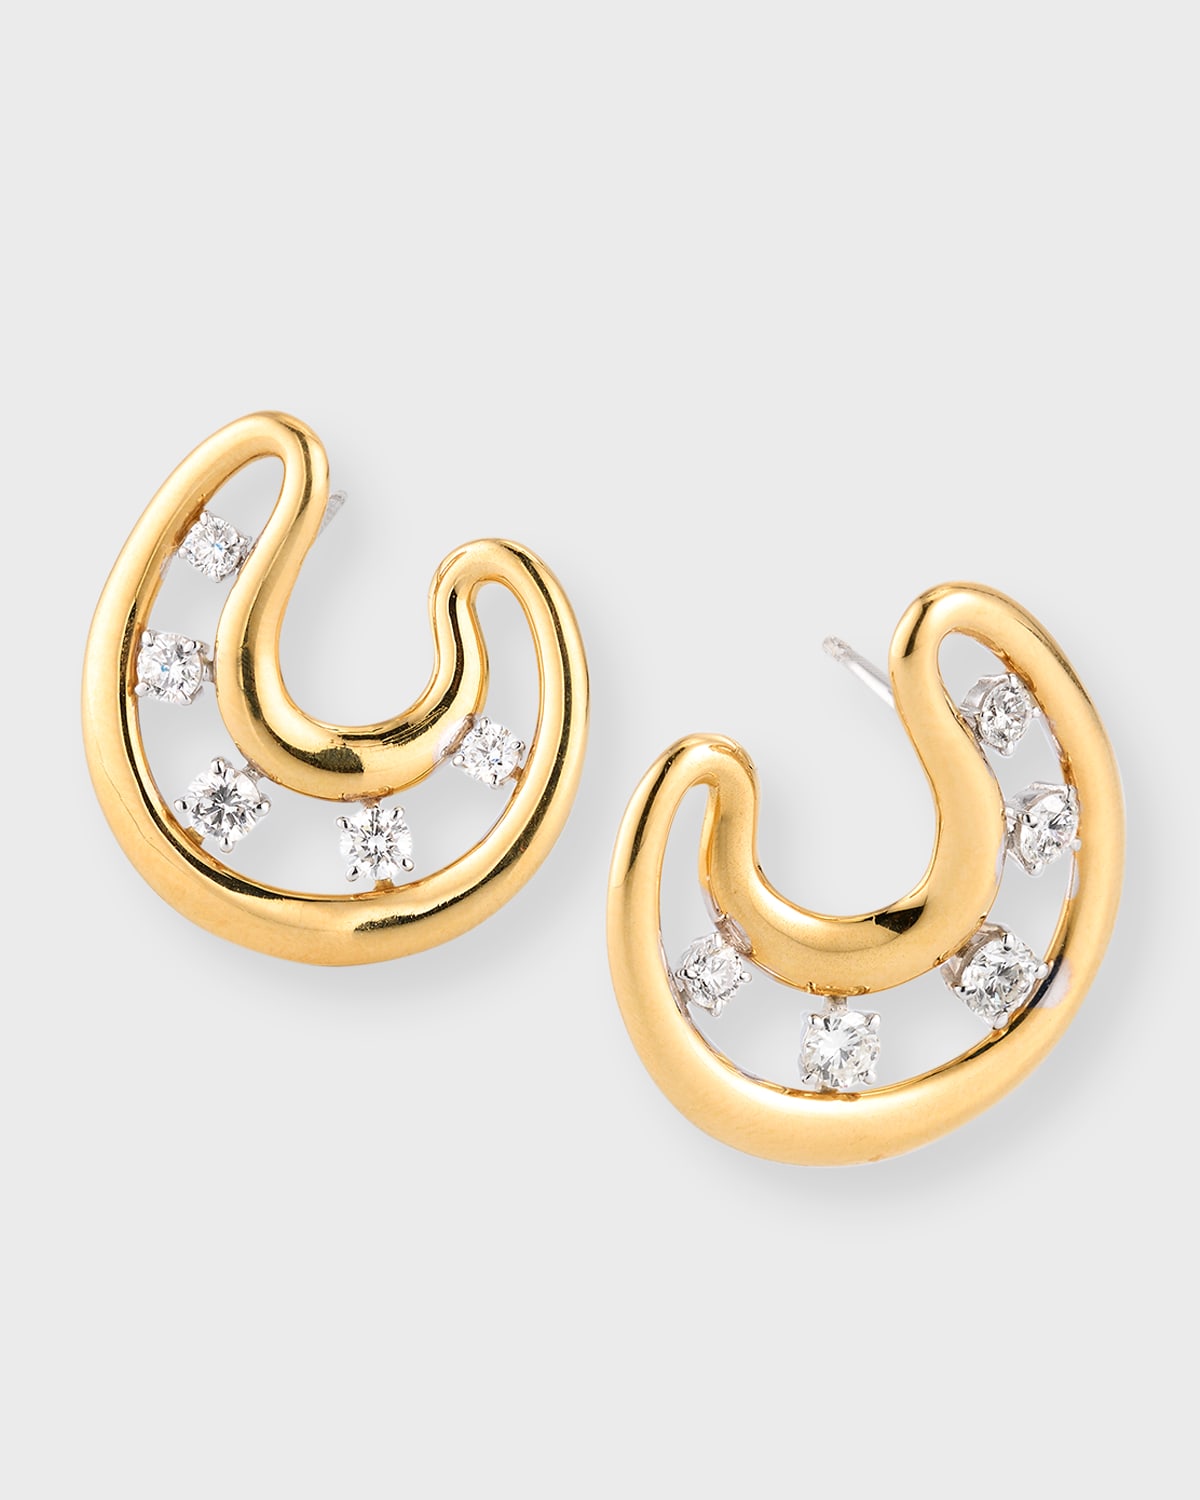 Staurino 18k Yellow Gold Allegra Earrings With Diamonds